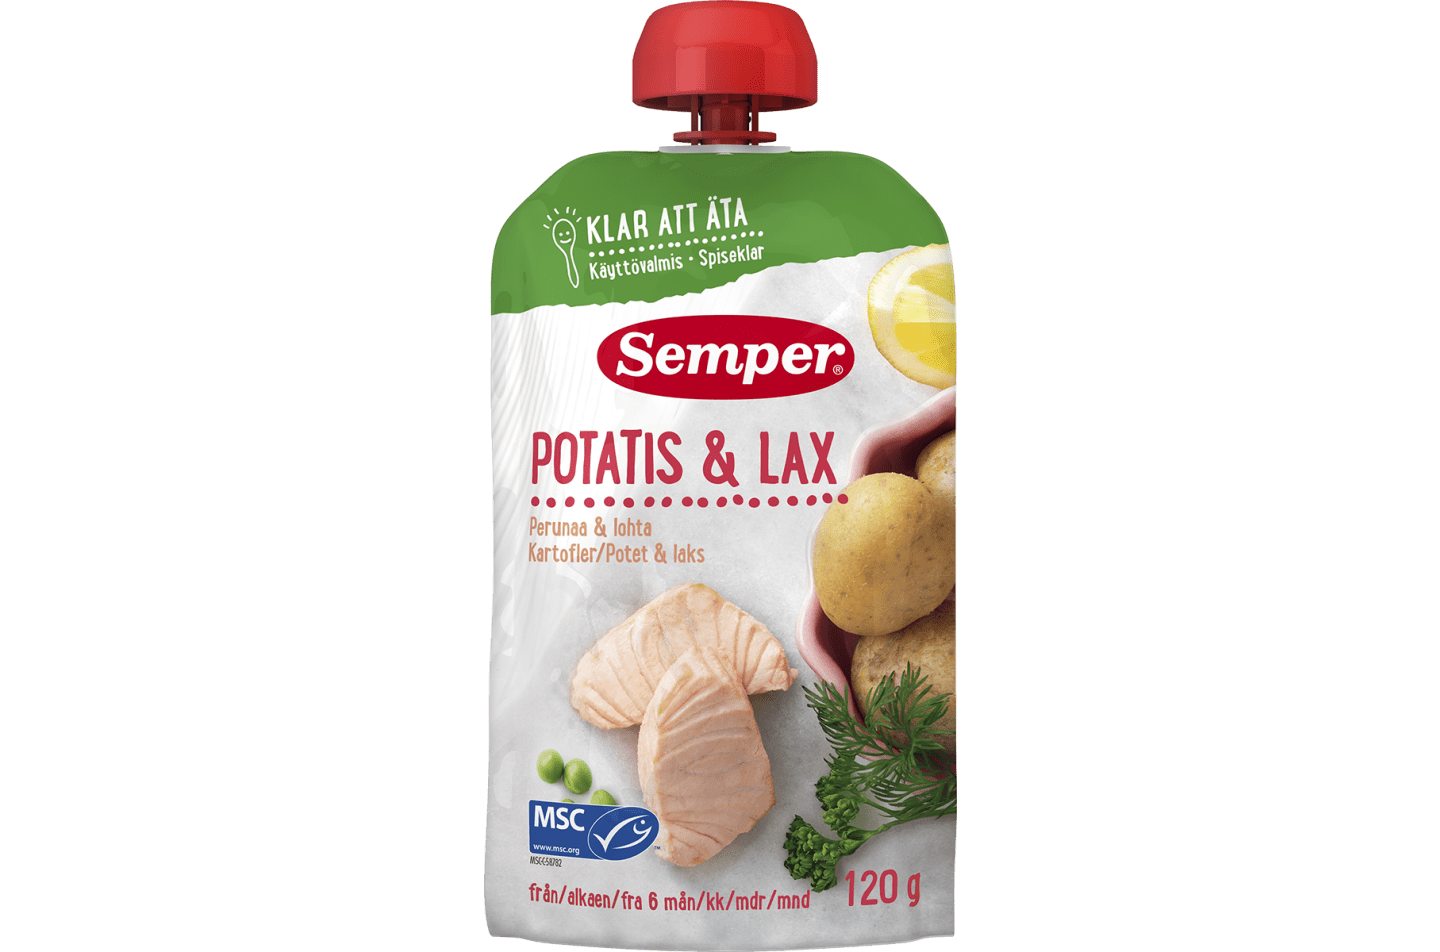 Potatis & lax i klämpåse från Semper Barnmat